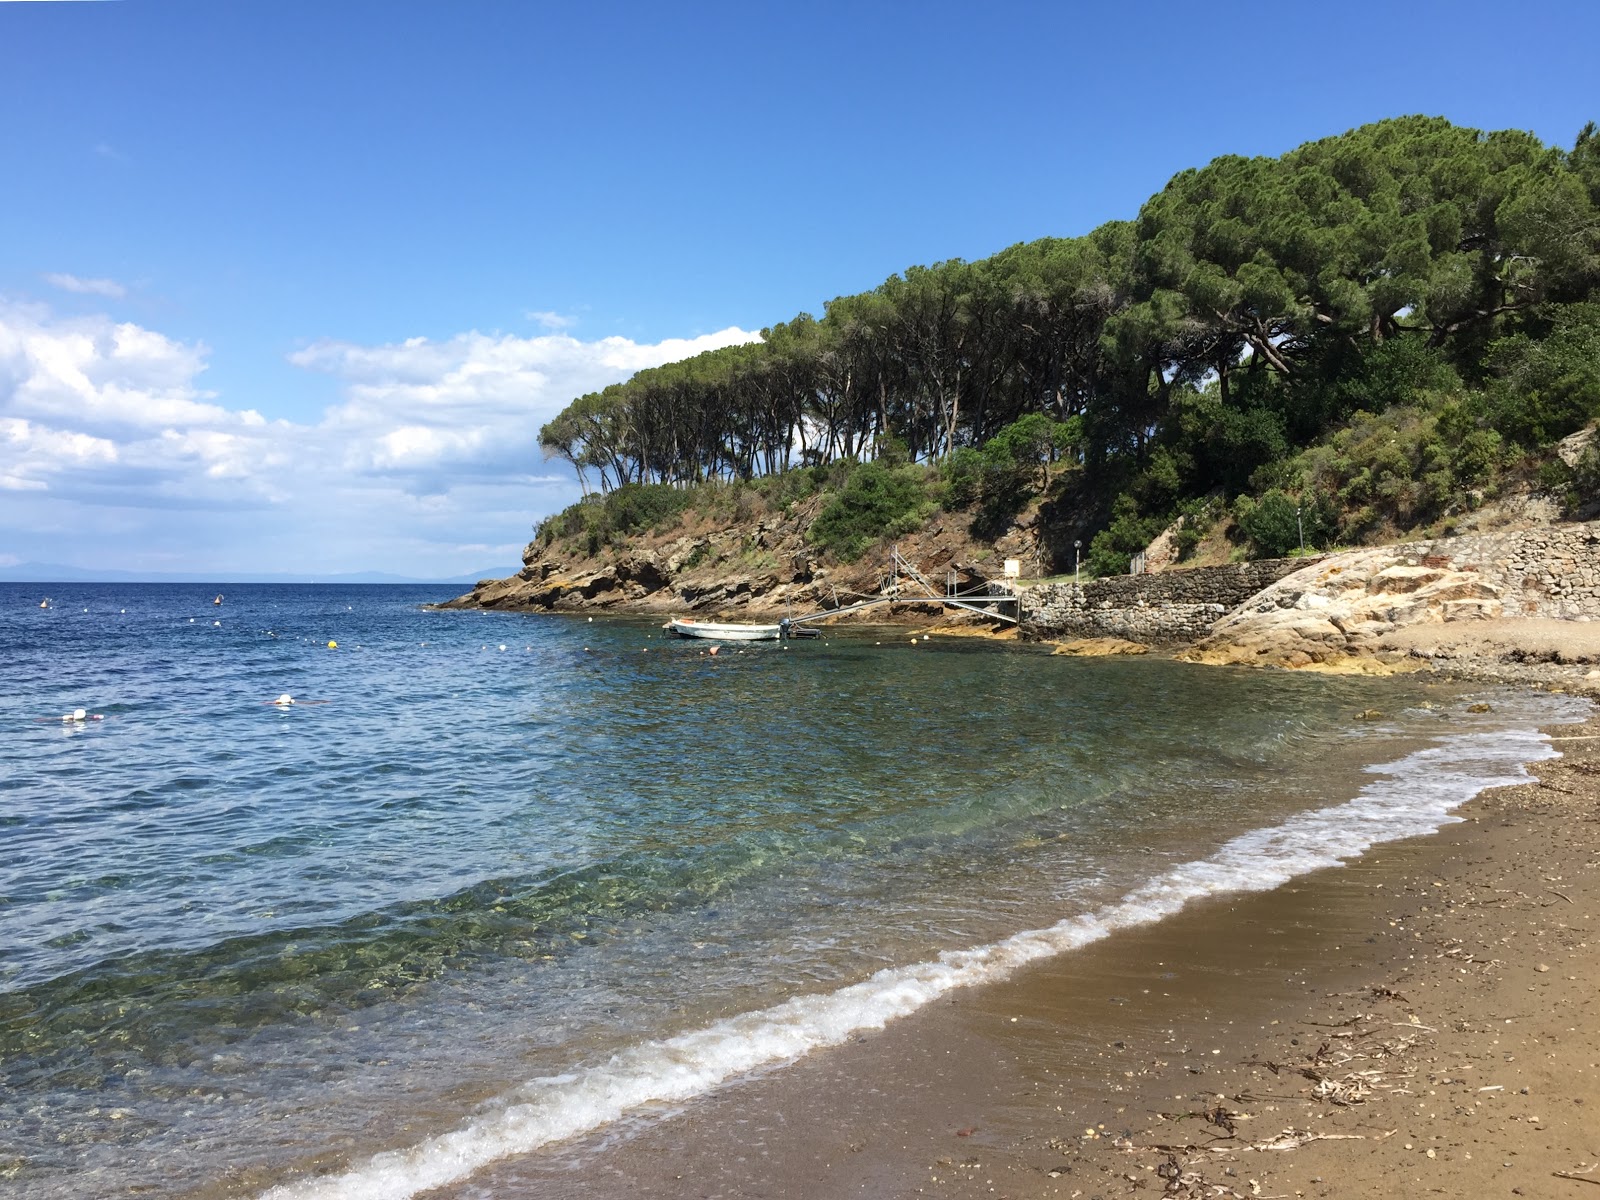 Fotografie cu Istia beach amplasat într-o zonă naturală